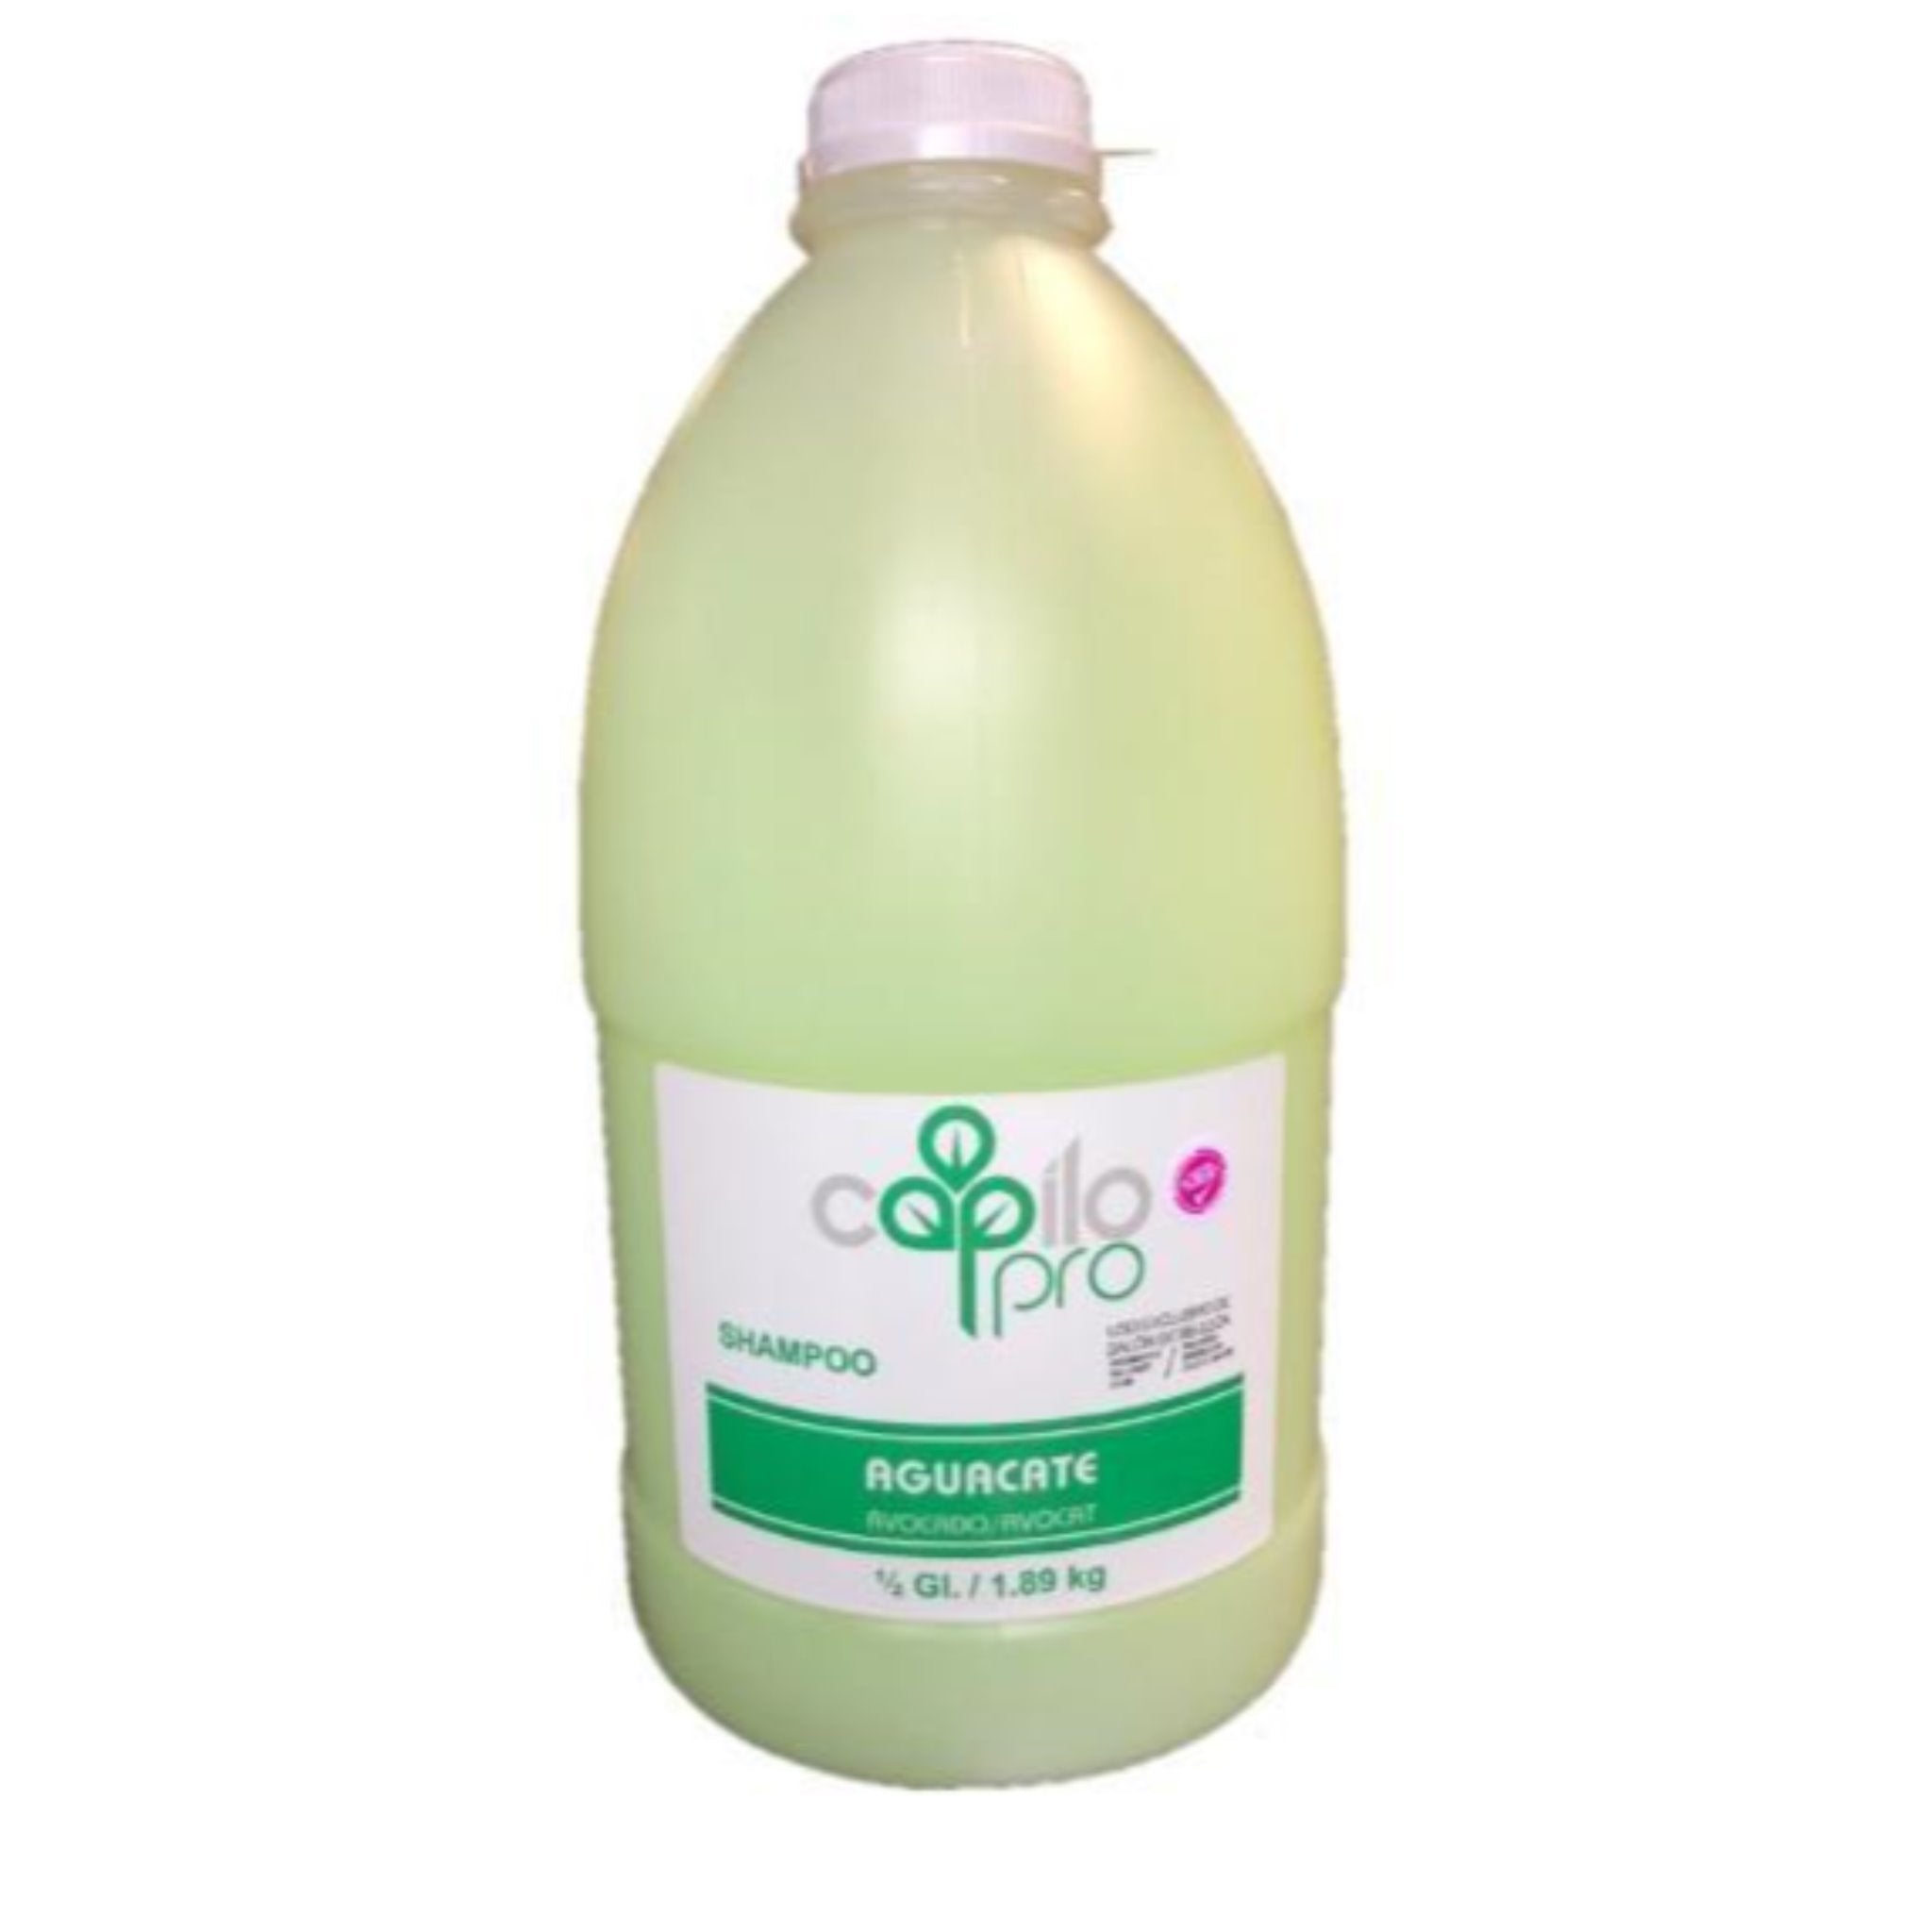 Capilo Avocado Shampoo 1/2 Gl